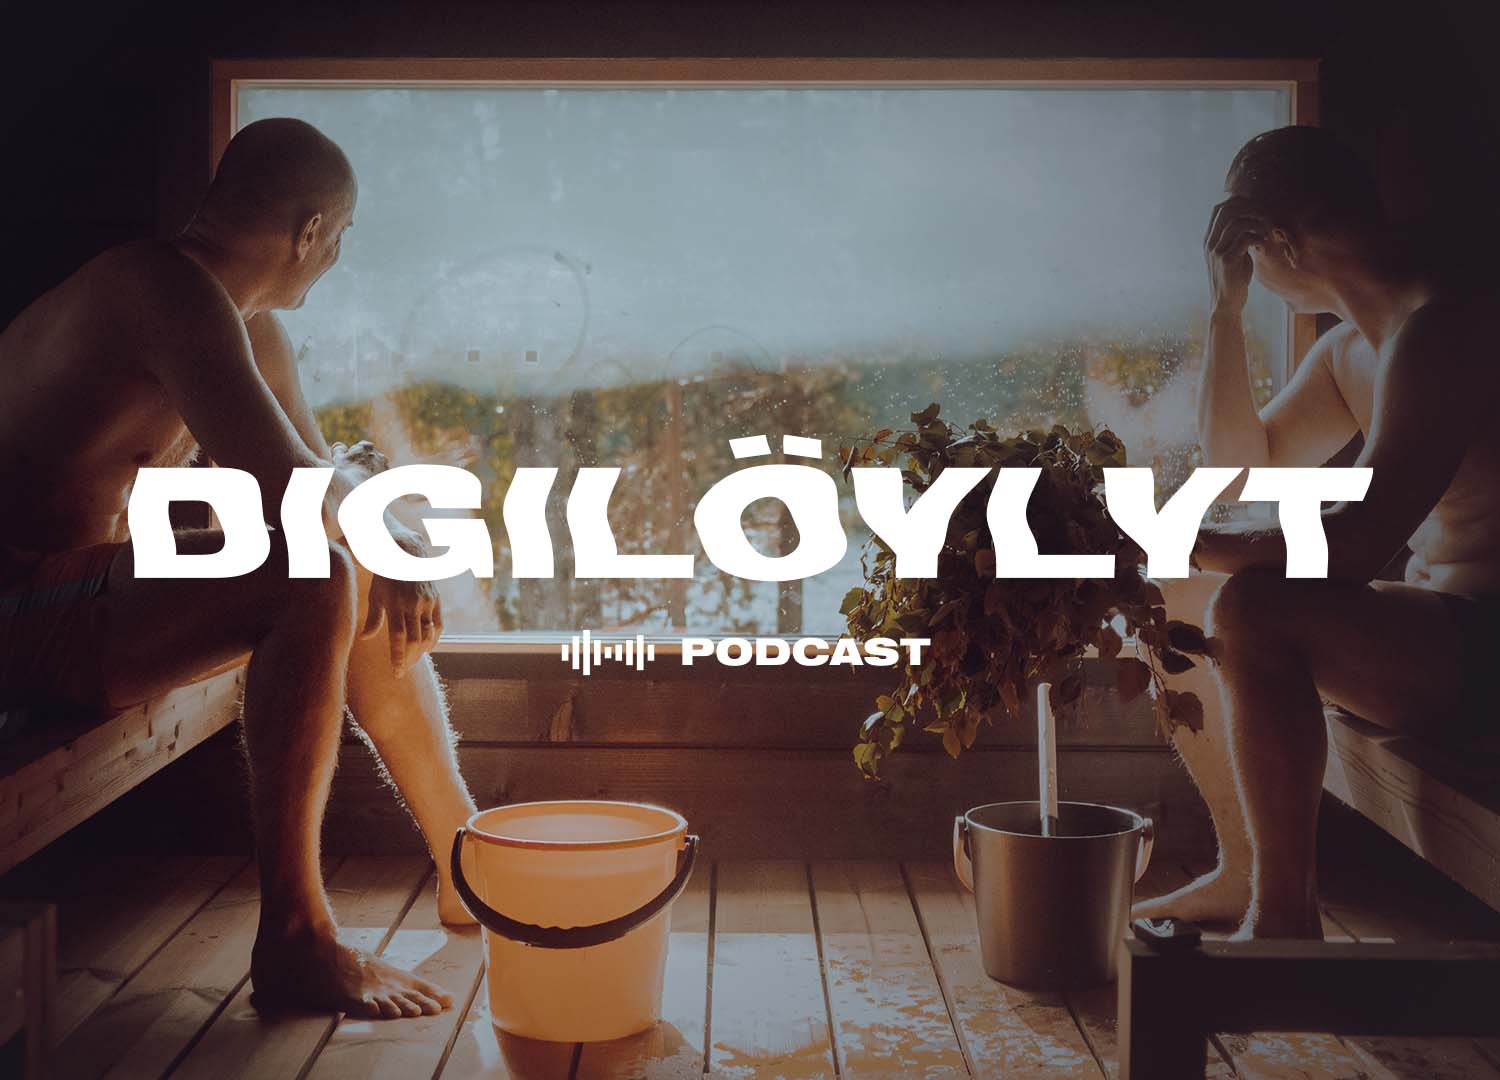 Uusi Digilöylyt-podcast - rehellistä puhetta bisneksestä, IT:stä ja elämästä!